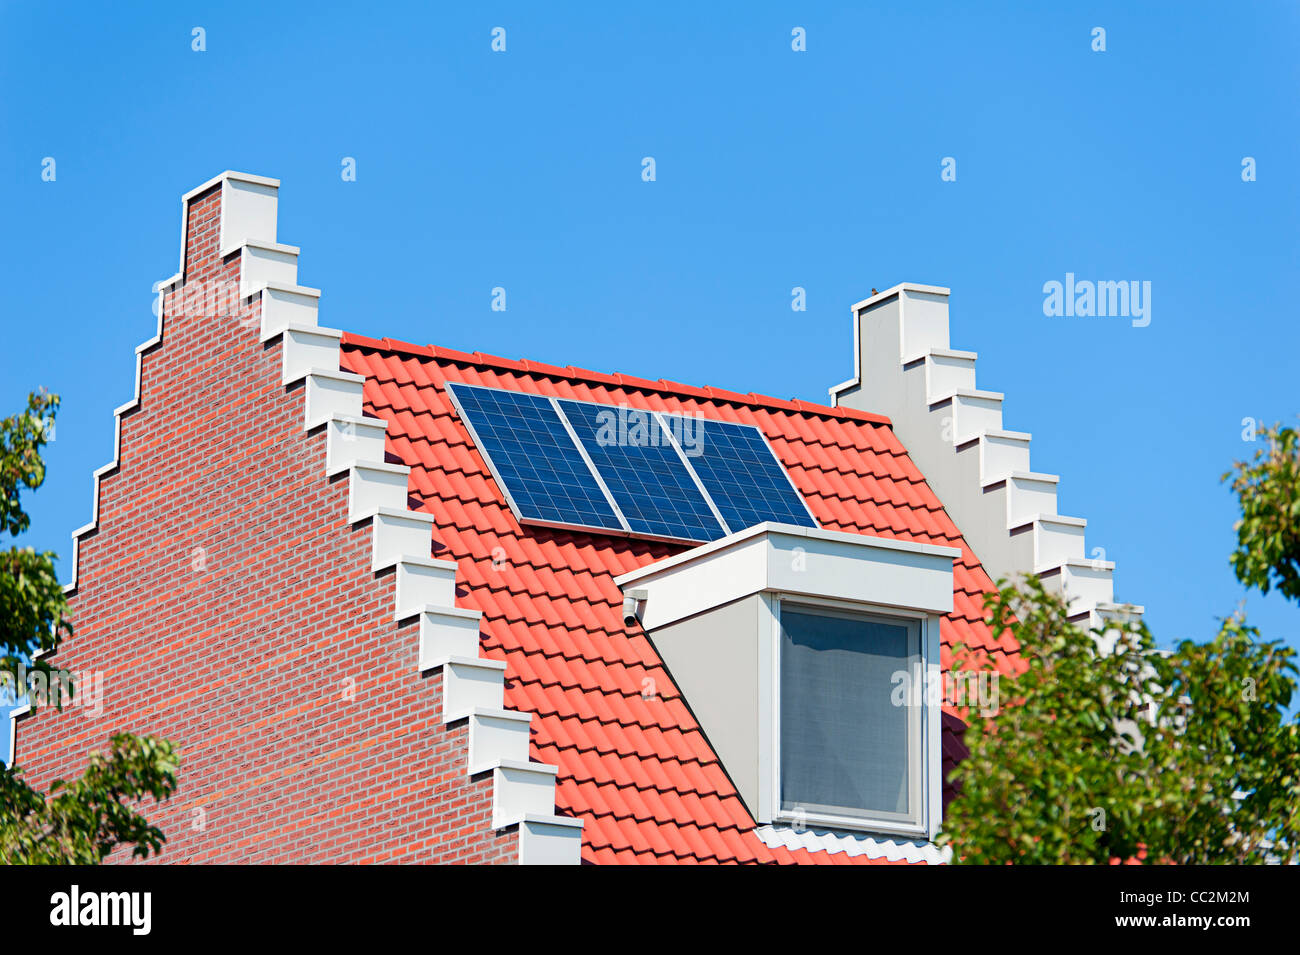 Casa holandesa moderna con paneles solares en el techo Foto de stock